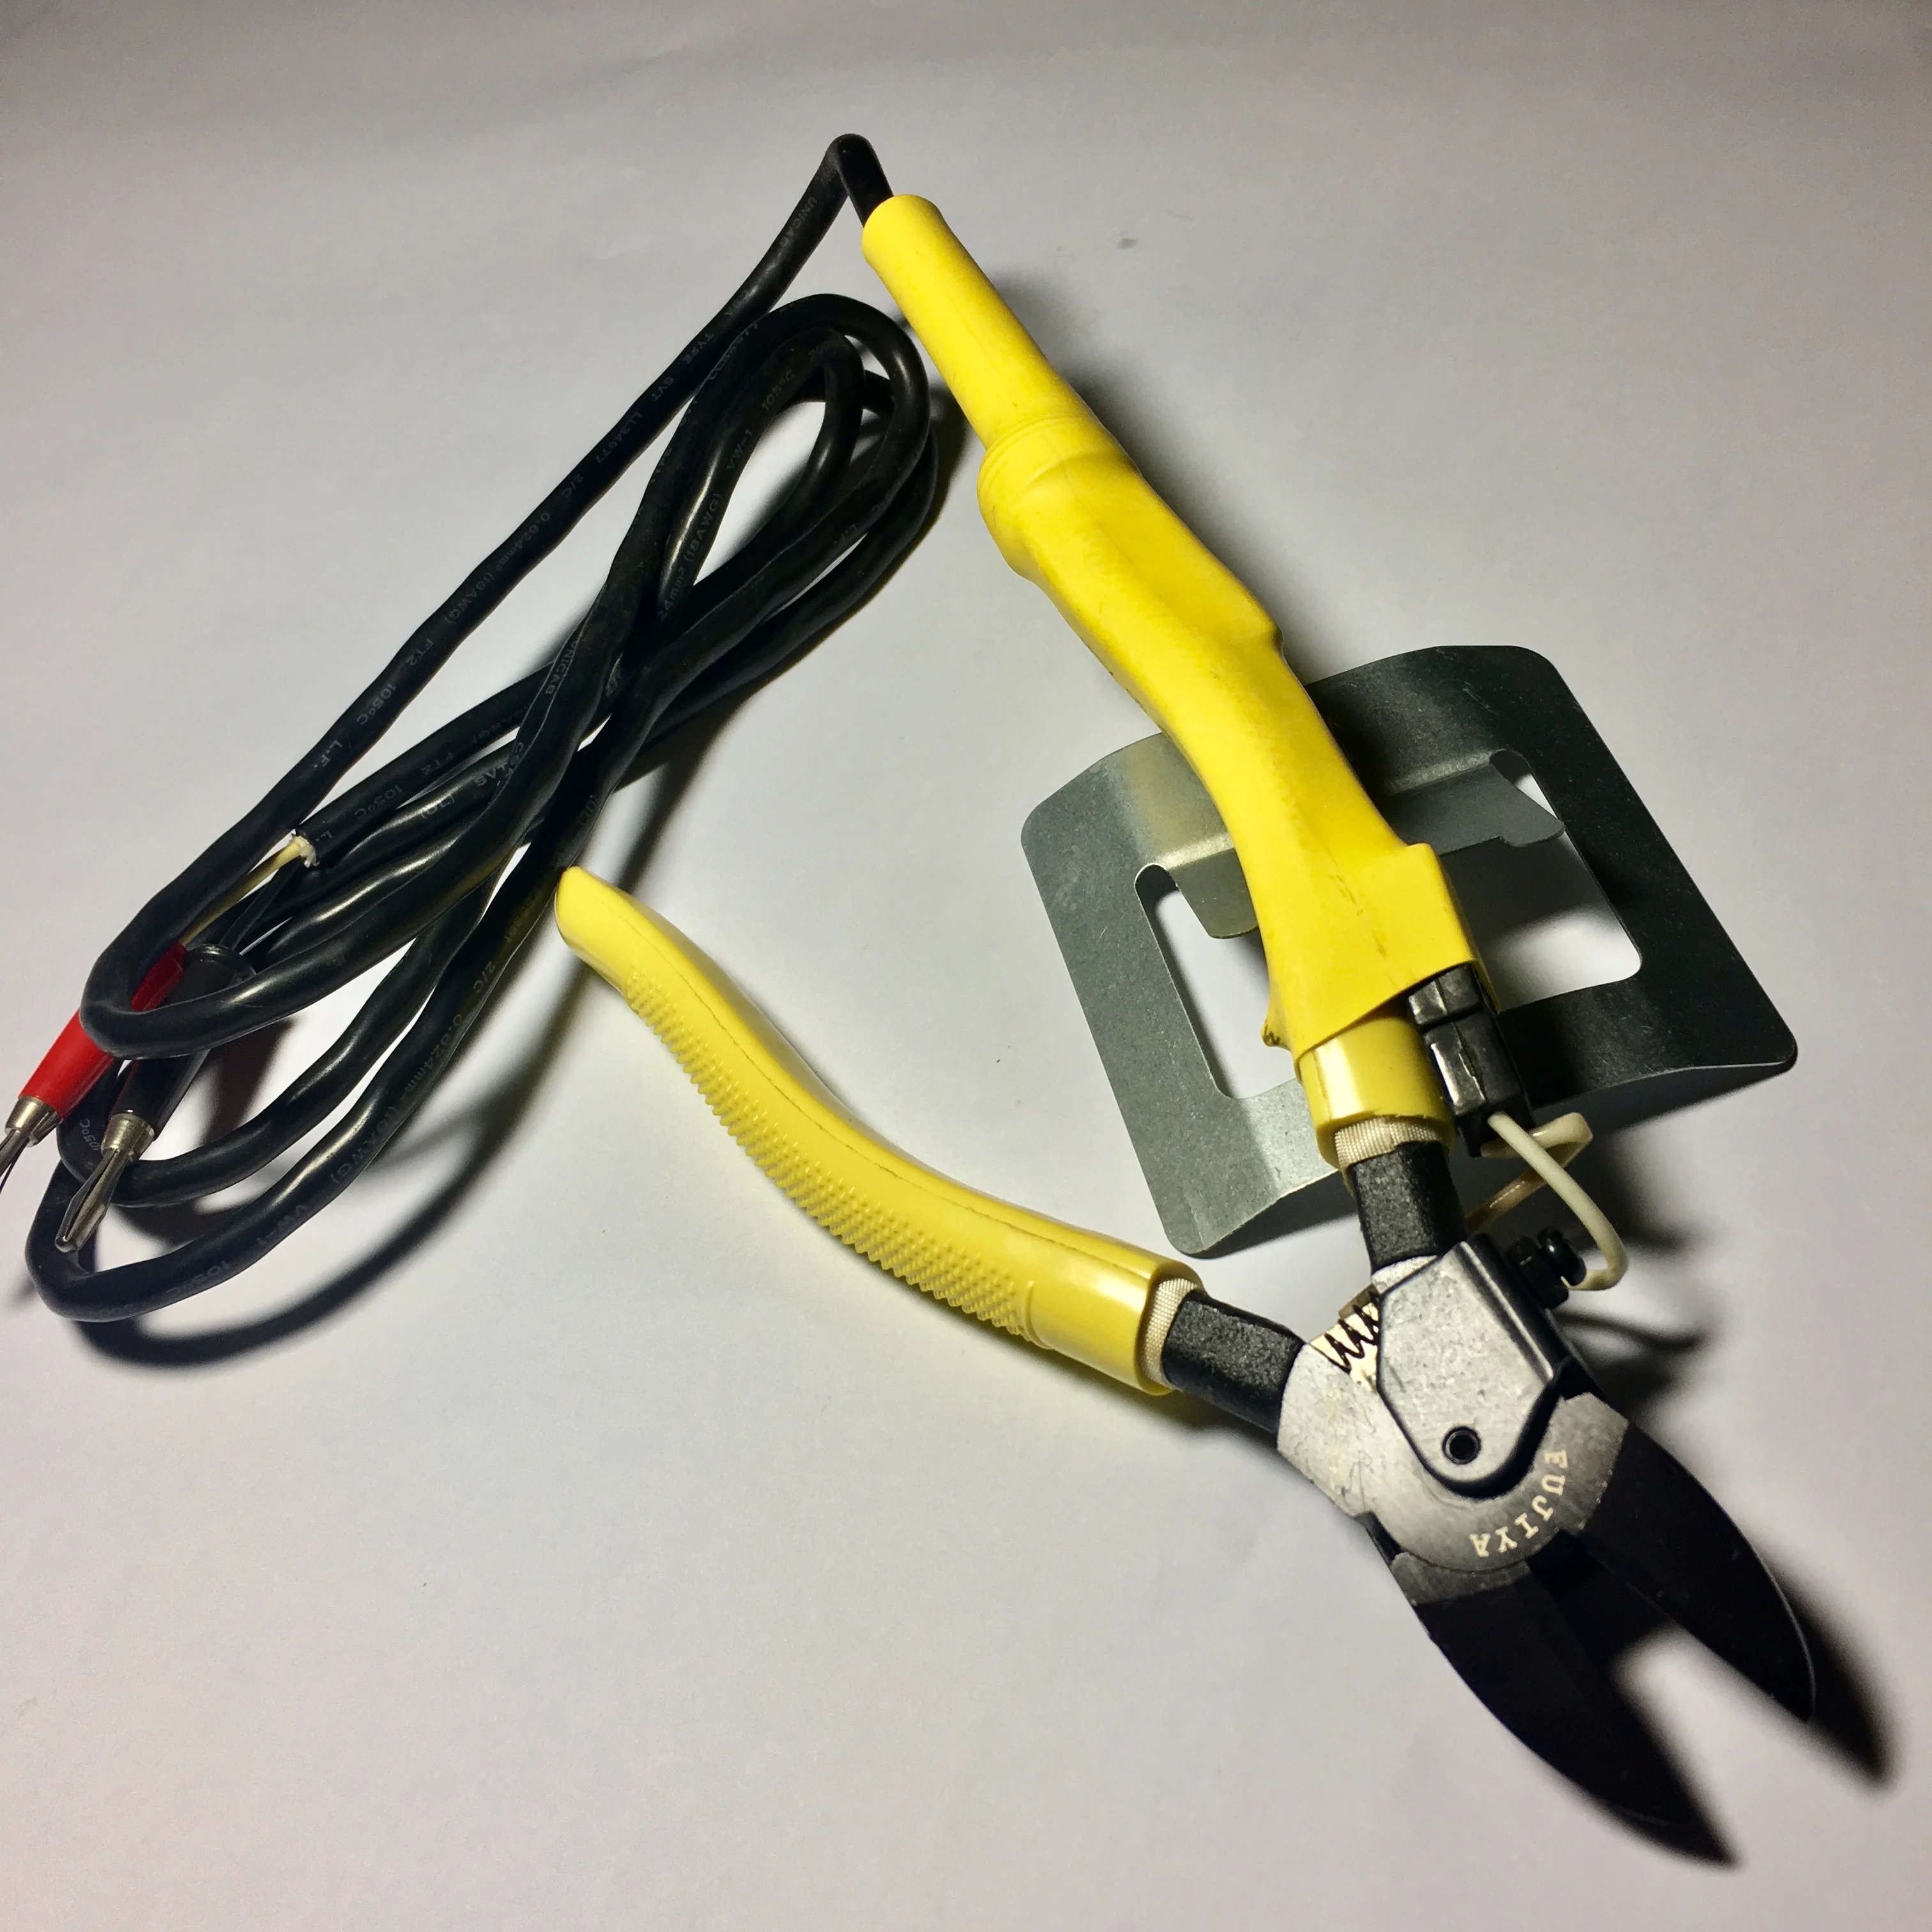 Heat Cutter for Plastic - Electric Hot Cutter / Nipper for Hard